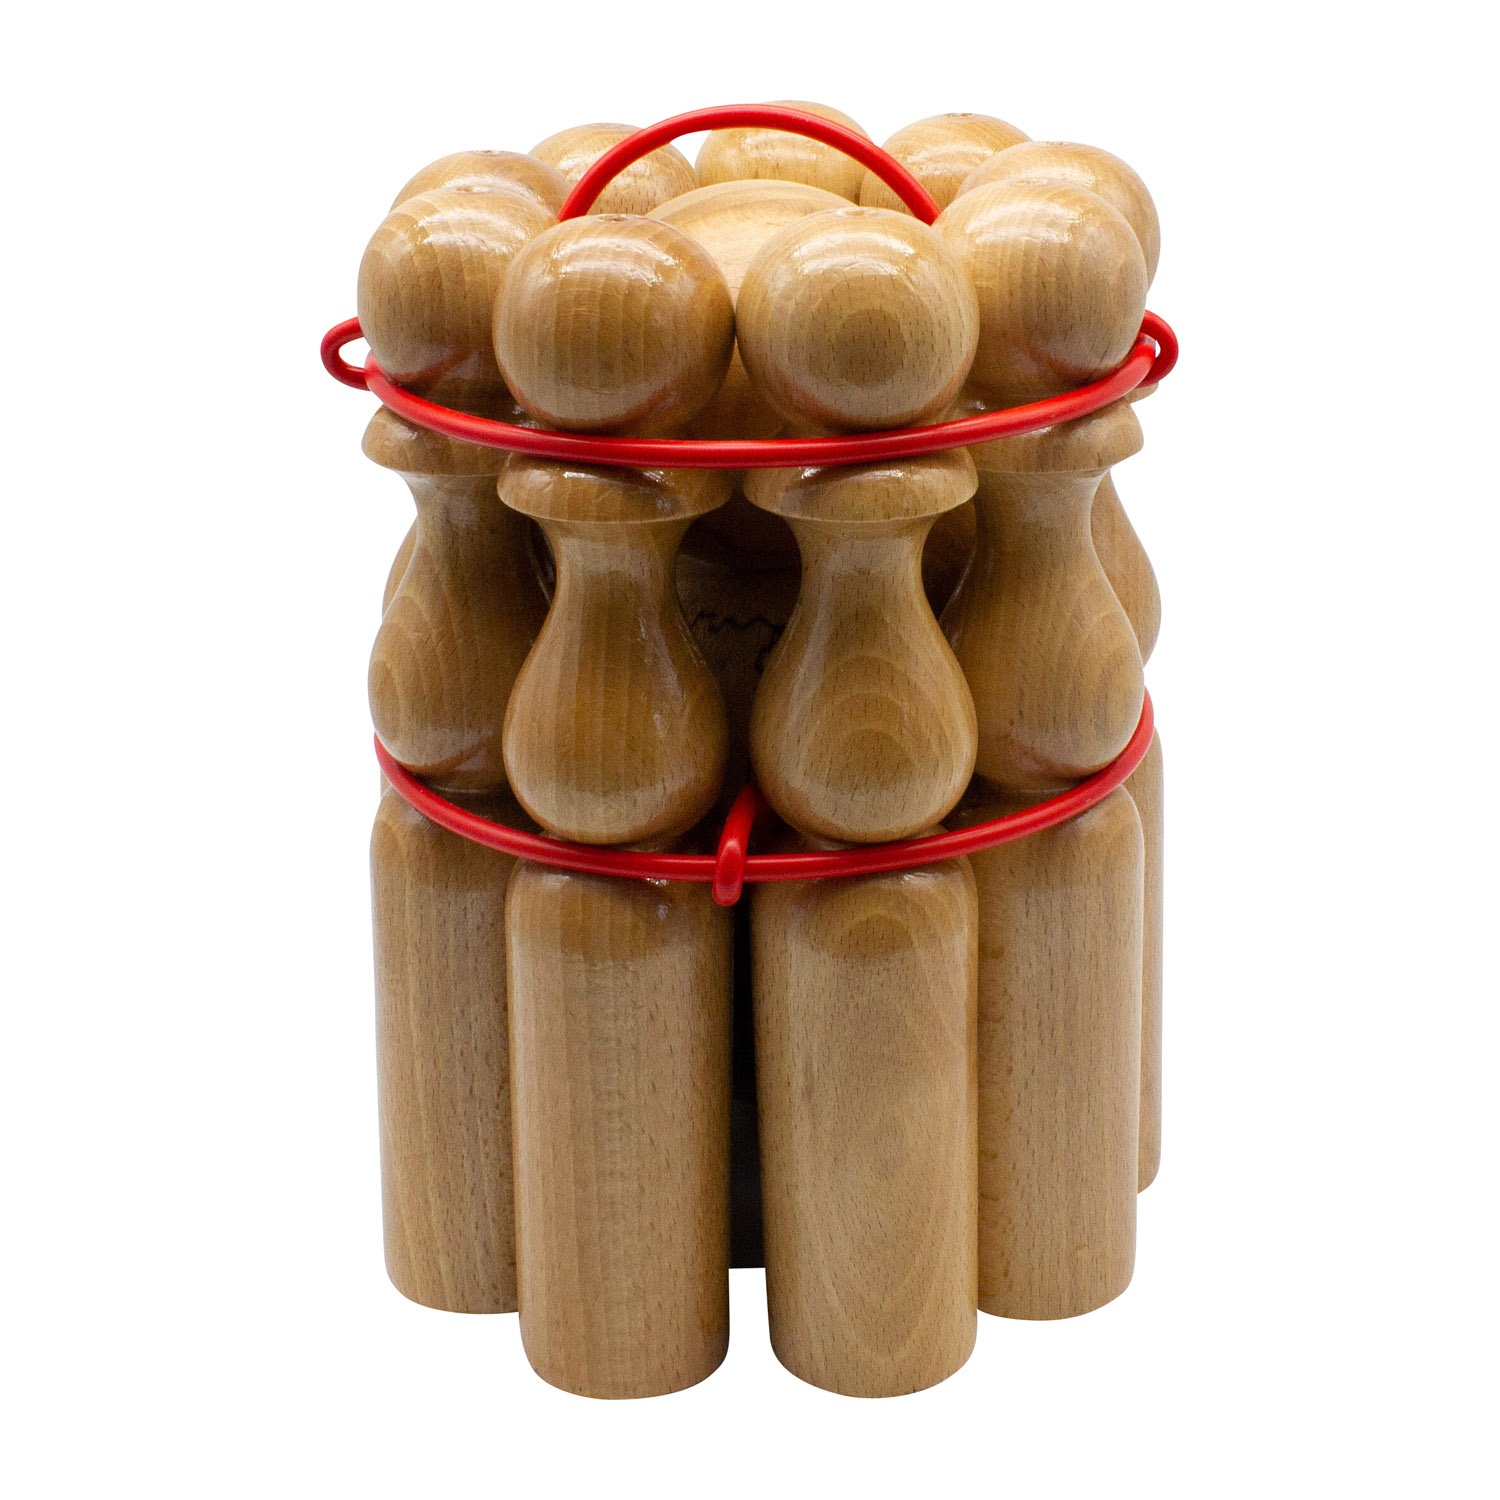 GICO Kegelspiel Kegel Set Bowling aus Holz für Kinder und Erwachsene – Der In- & Outdoor Spielspaß mit Qualitätsware aus Massivholz -Made in EU-Höhe 24 cm–3018